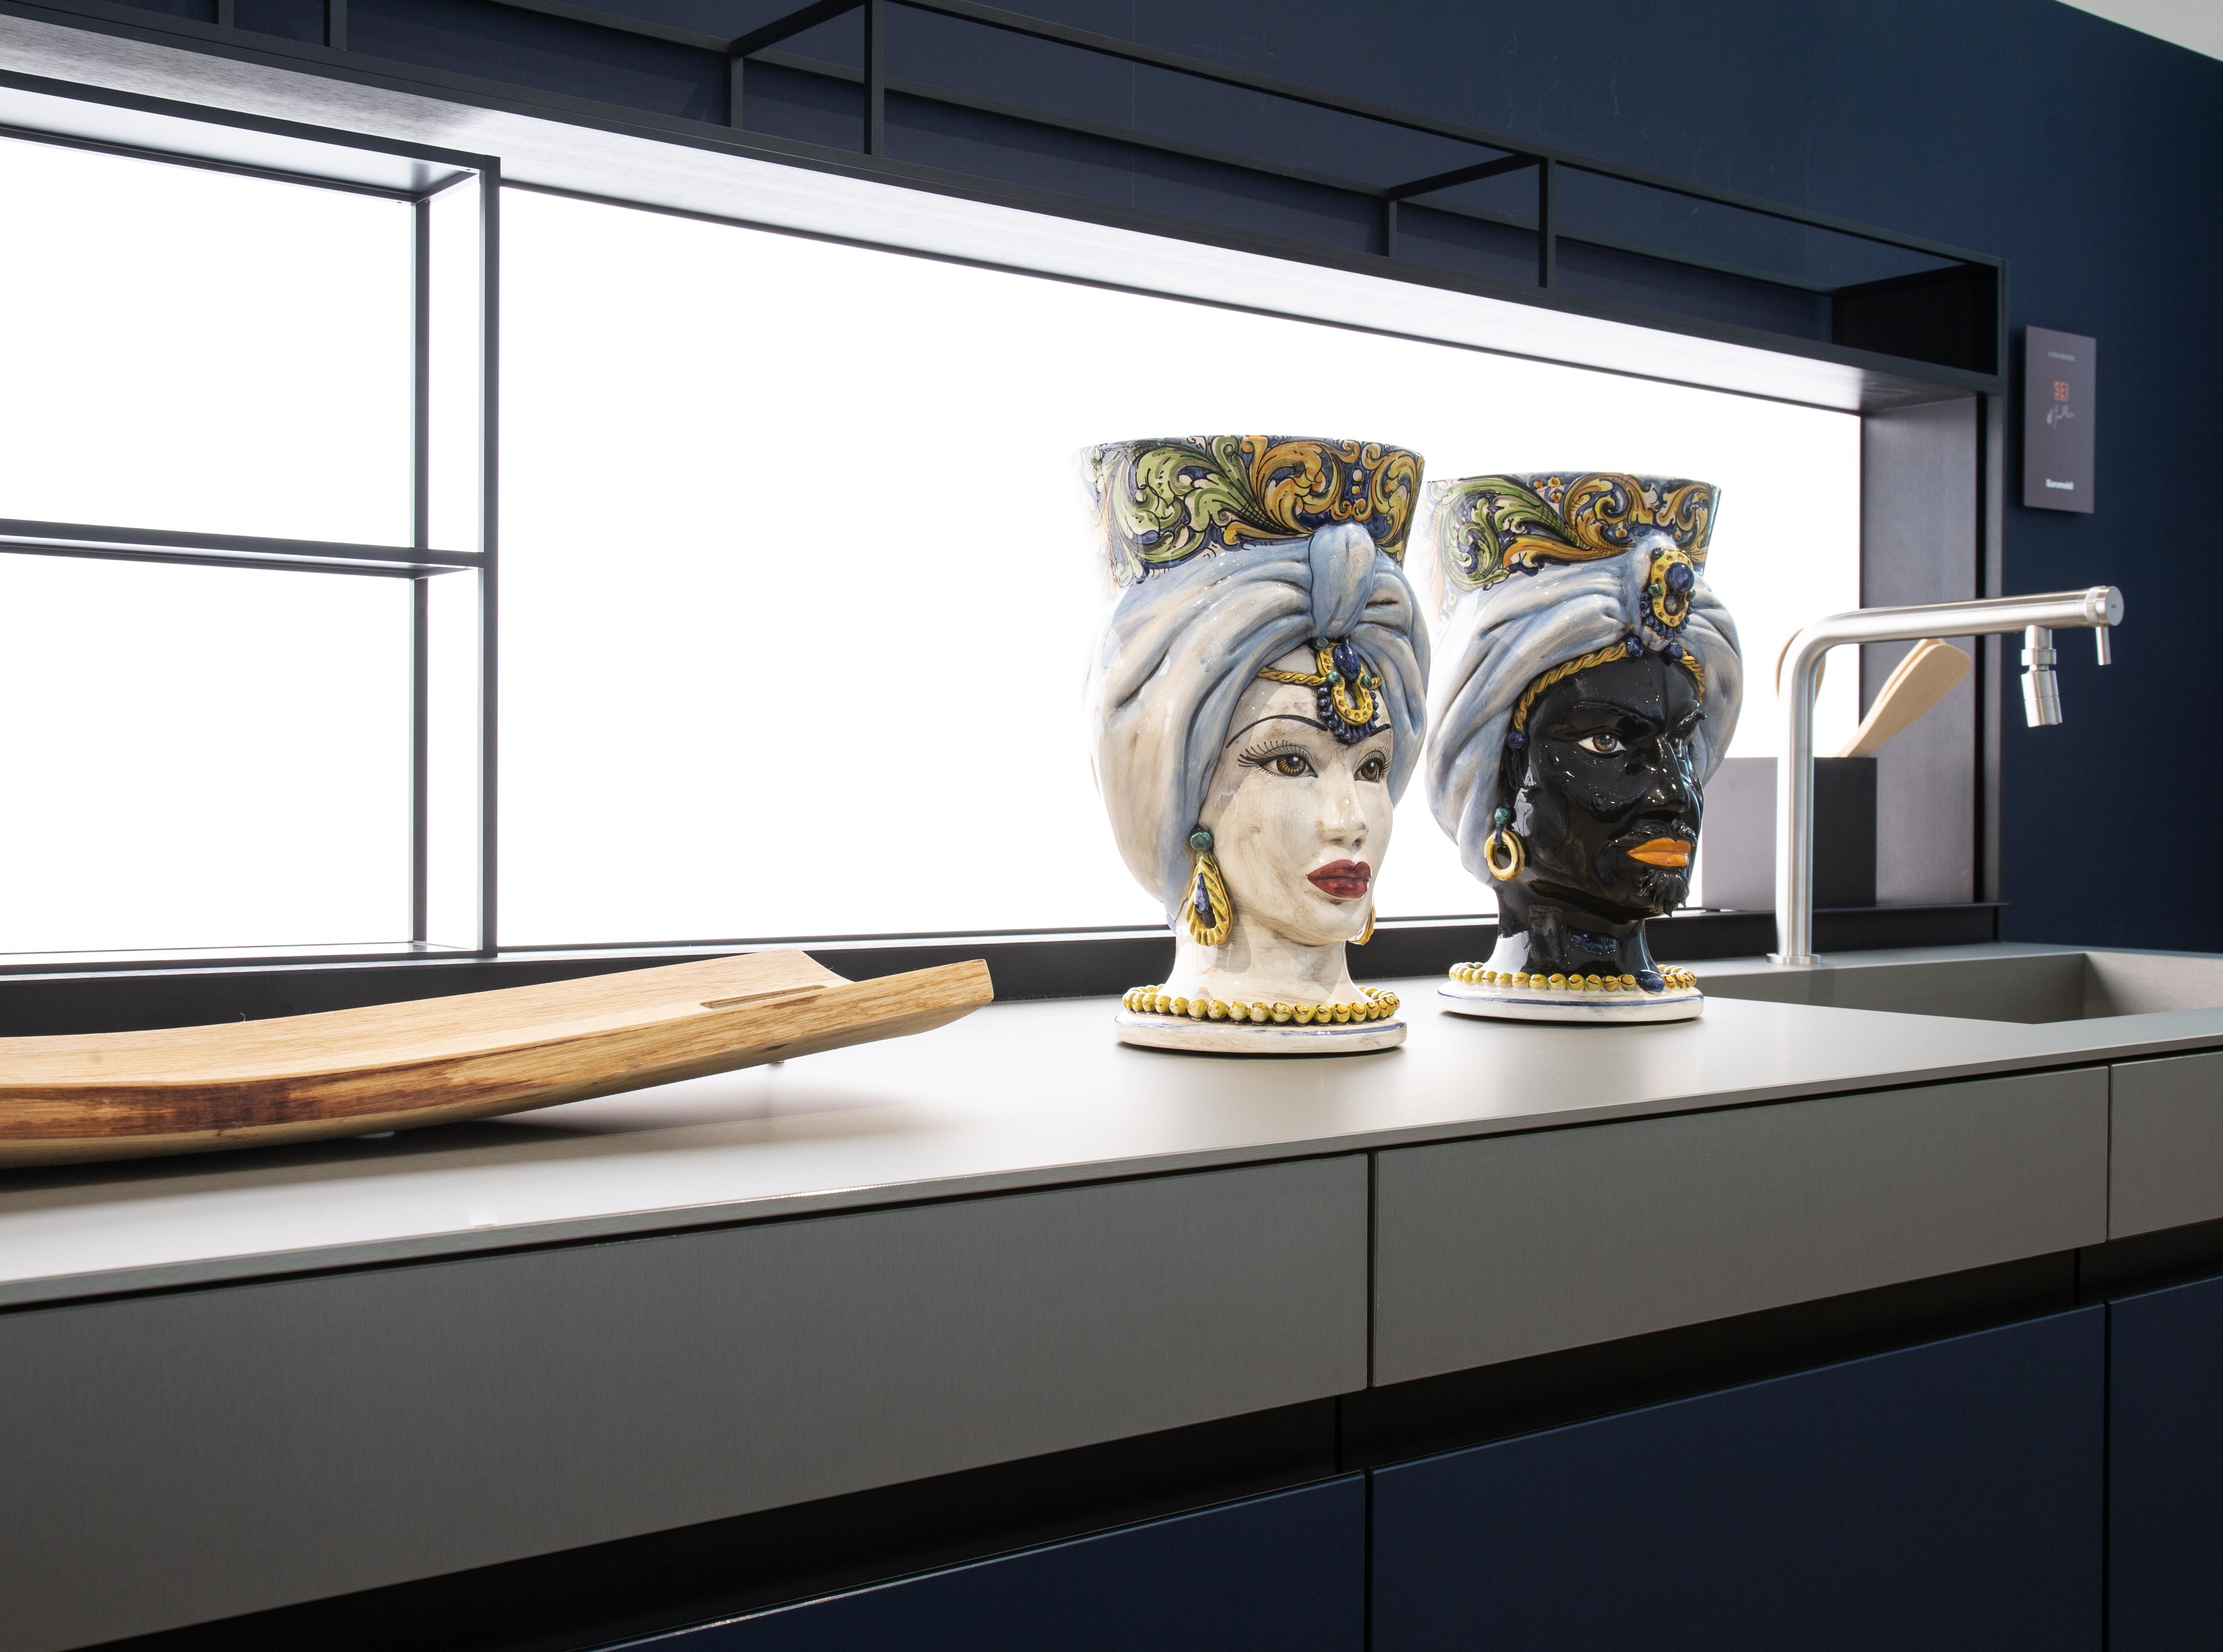 Die Sammlung

Diese Kollektion bietet Ideen für zeitgenössische Dekoration durch raffinierte Kunstwerke, die an die Tradition der Keramik von Caltagirone gebunden sind, Kunstobjekte, die Geschichte und Design verbinden.
Die extreme Liebe zum